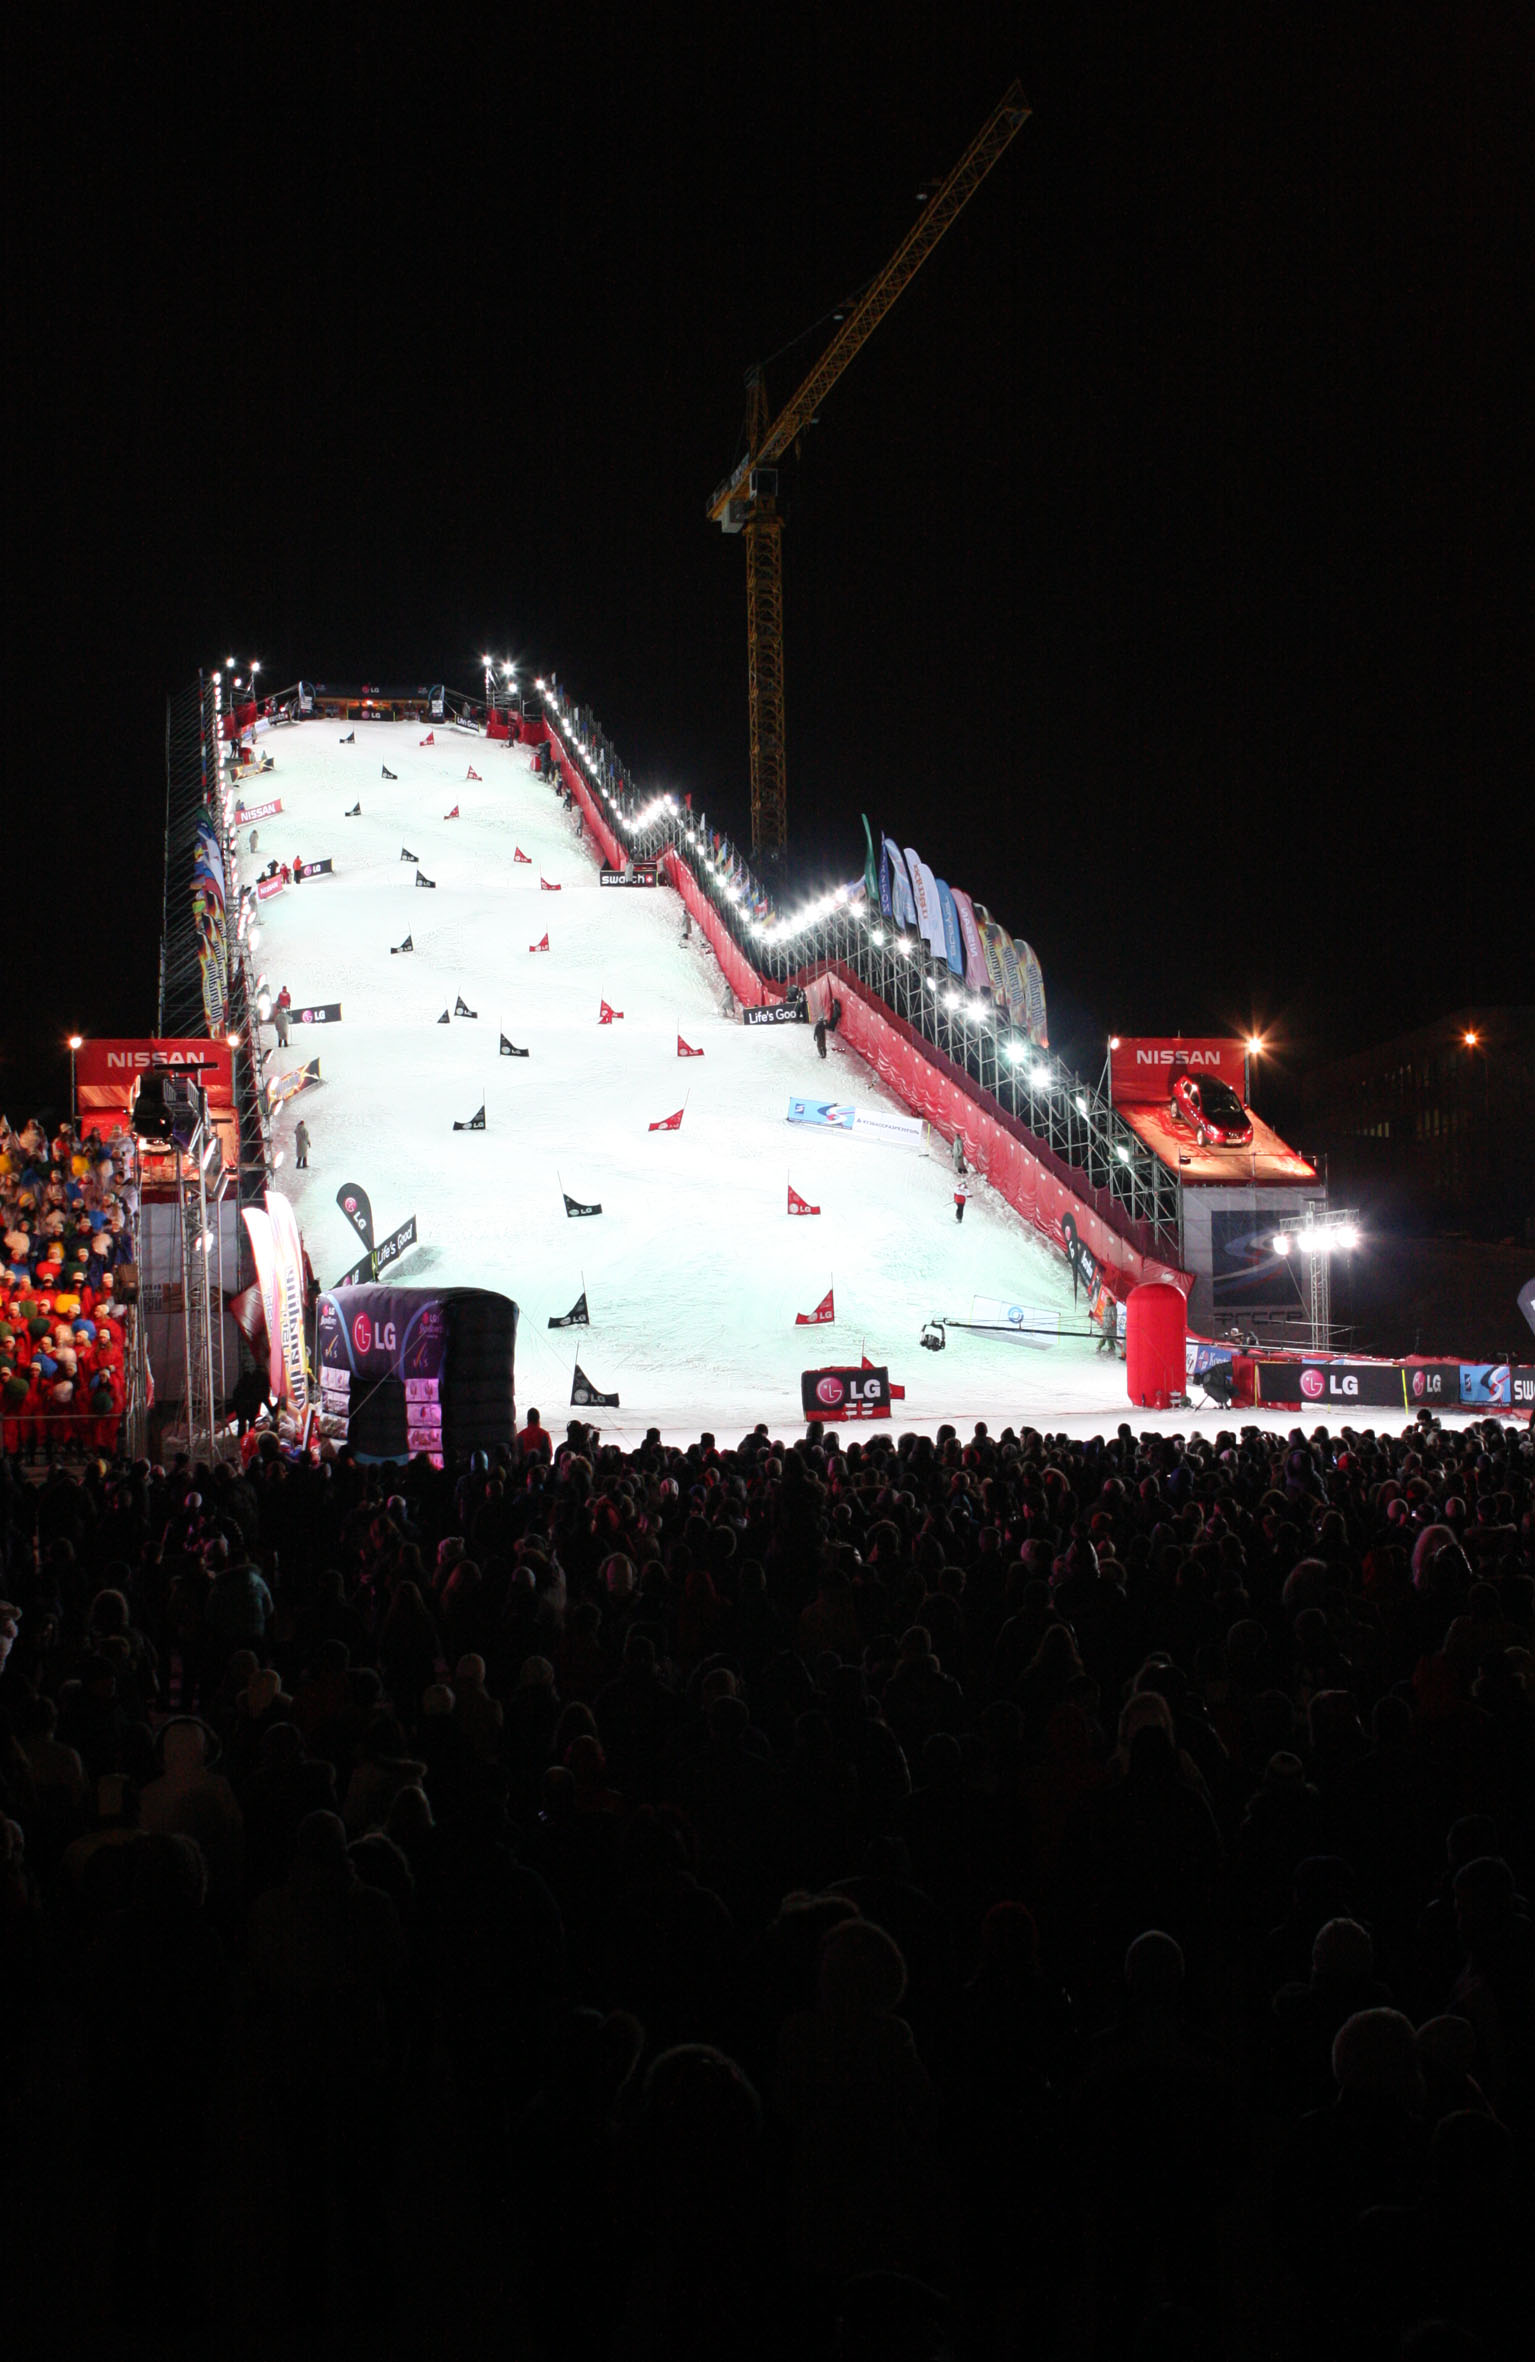 Die imposante Rampe, auf der das Weltcuprennen in Moskau stattfand. Es waren tausende Zuschauer anwesend, um das Spektakel zu verfolgen.